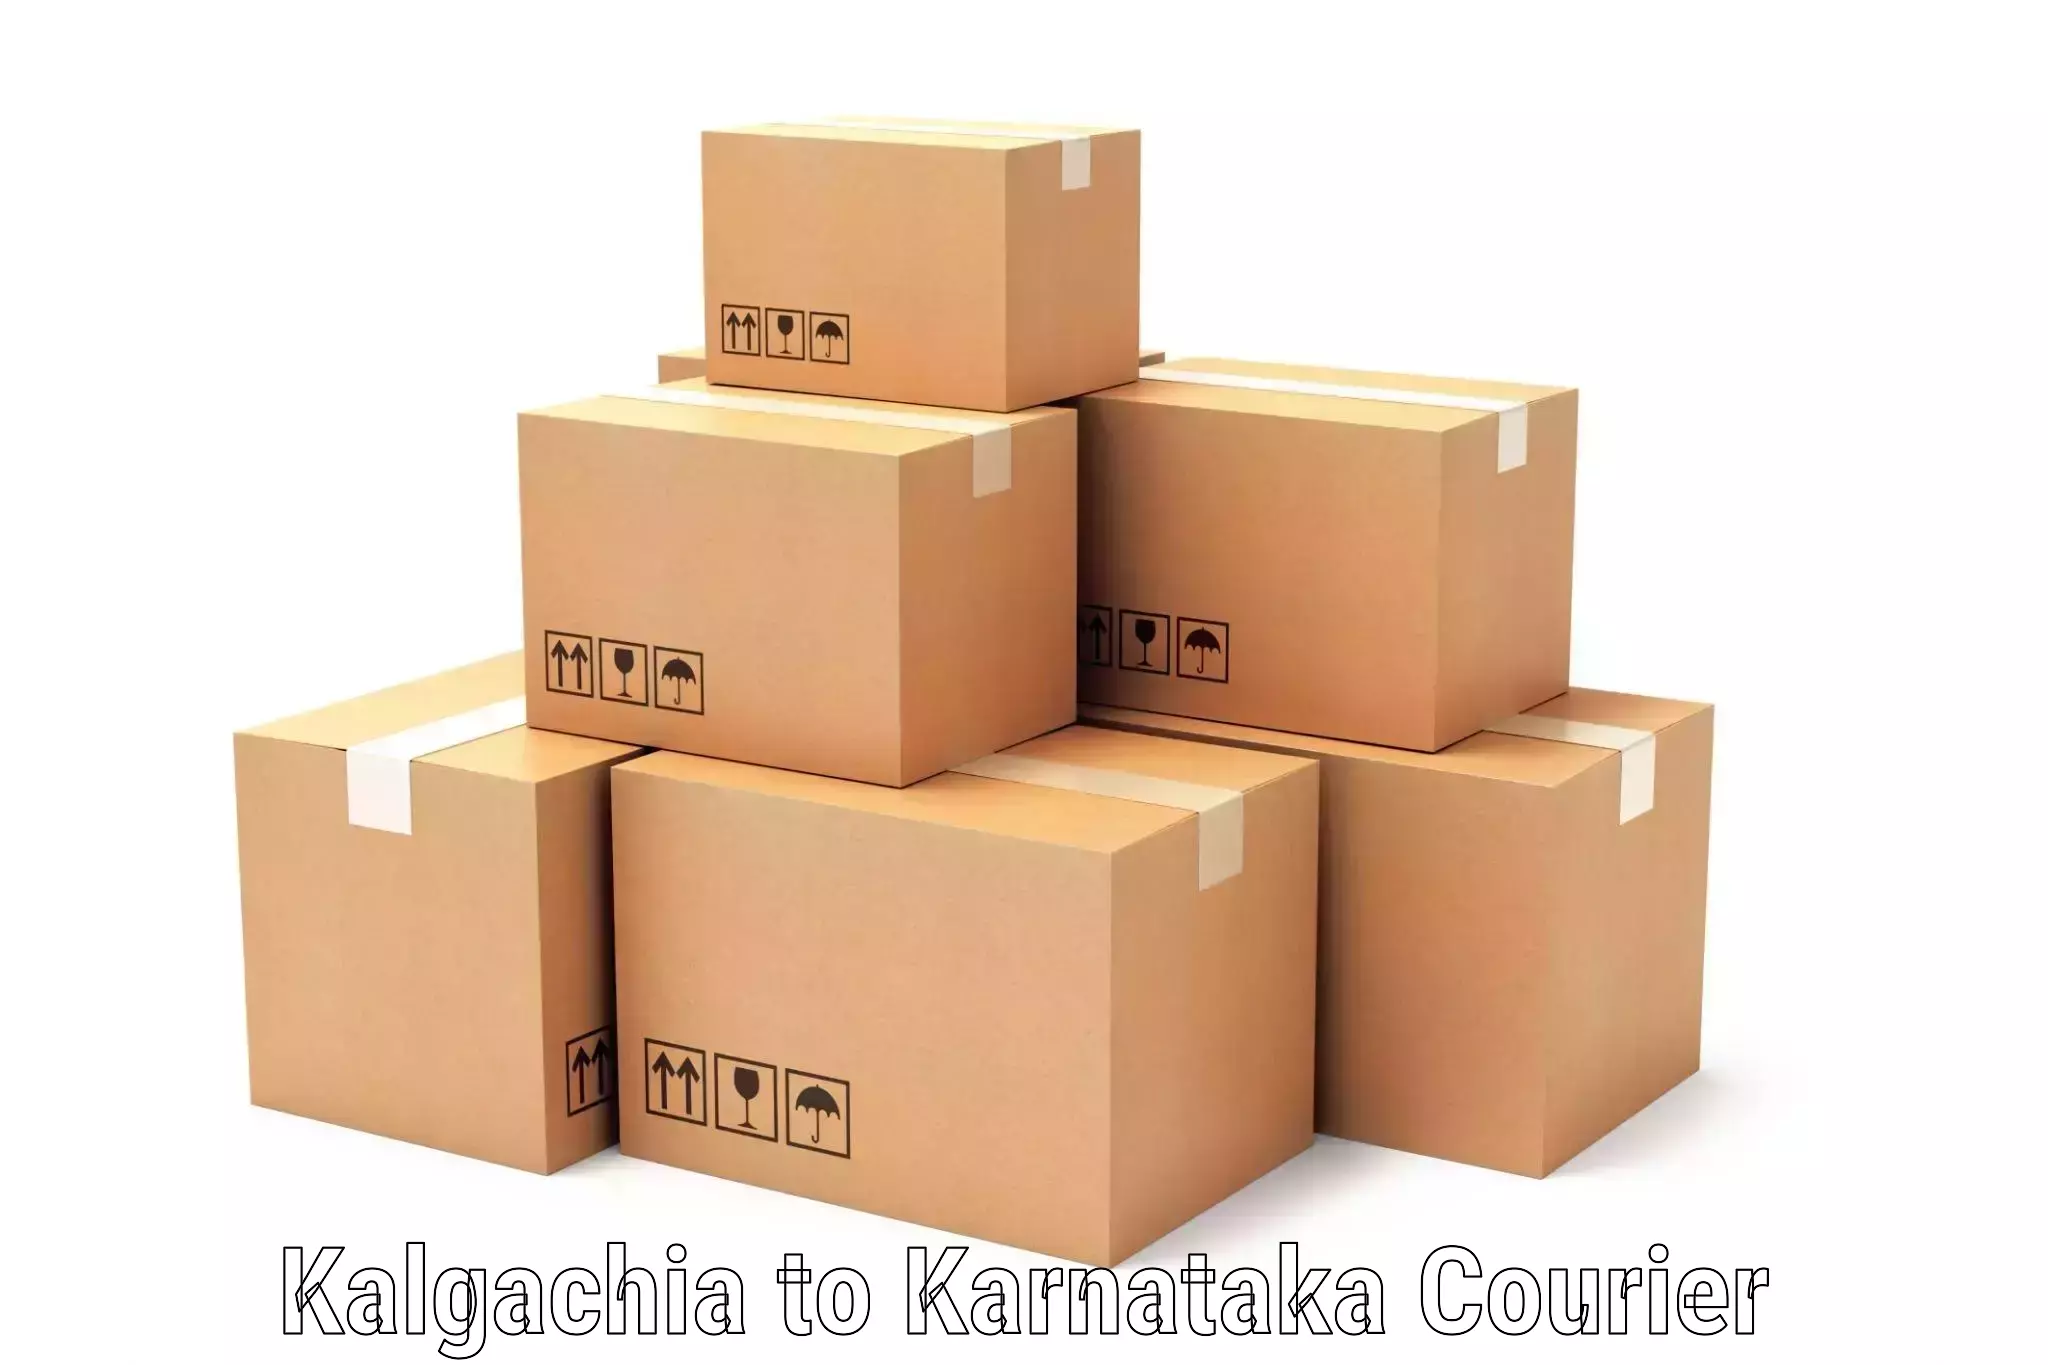 Next-day delivery options Kalgachia to Bagepalli